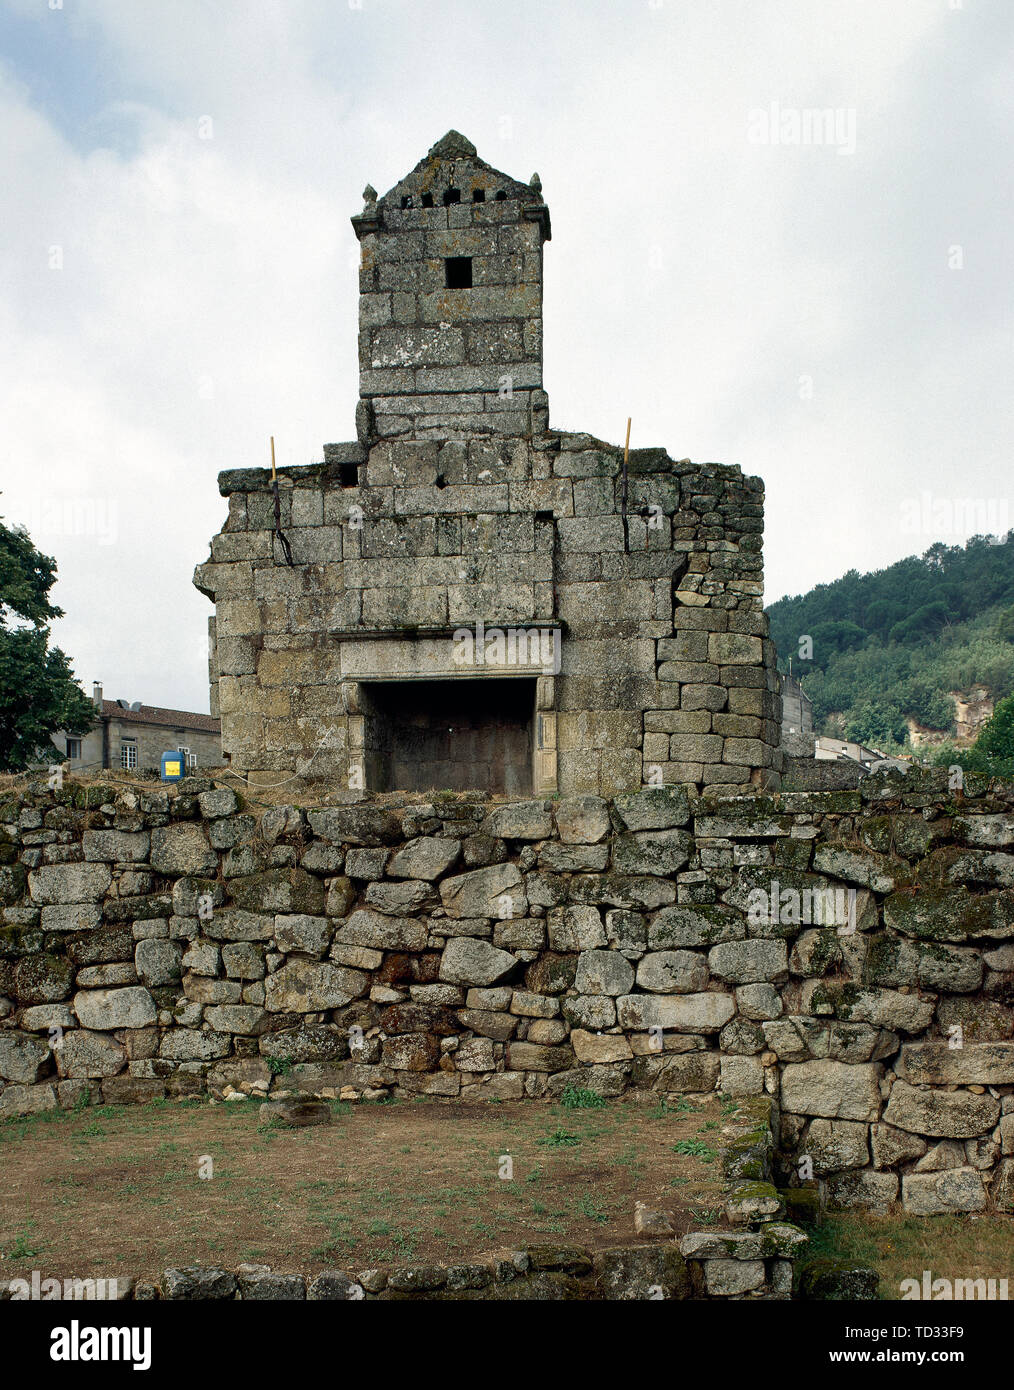 L'Espagne. La Galice. Ribadavia. Le Château des Comtes de Sarmiento. Il a été construit au milieu du 15ème siècle. Ruines de la cheminée. Banque D'Images